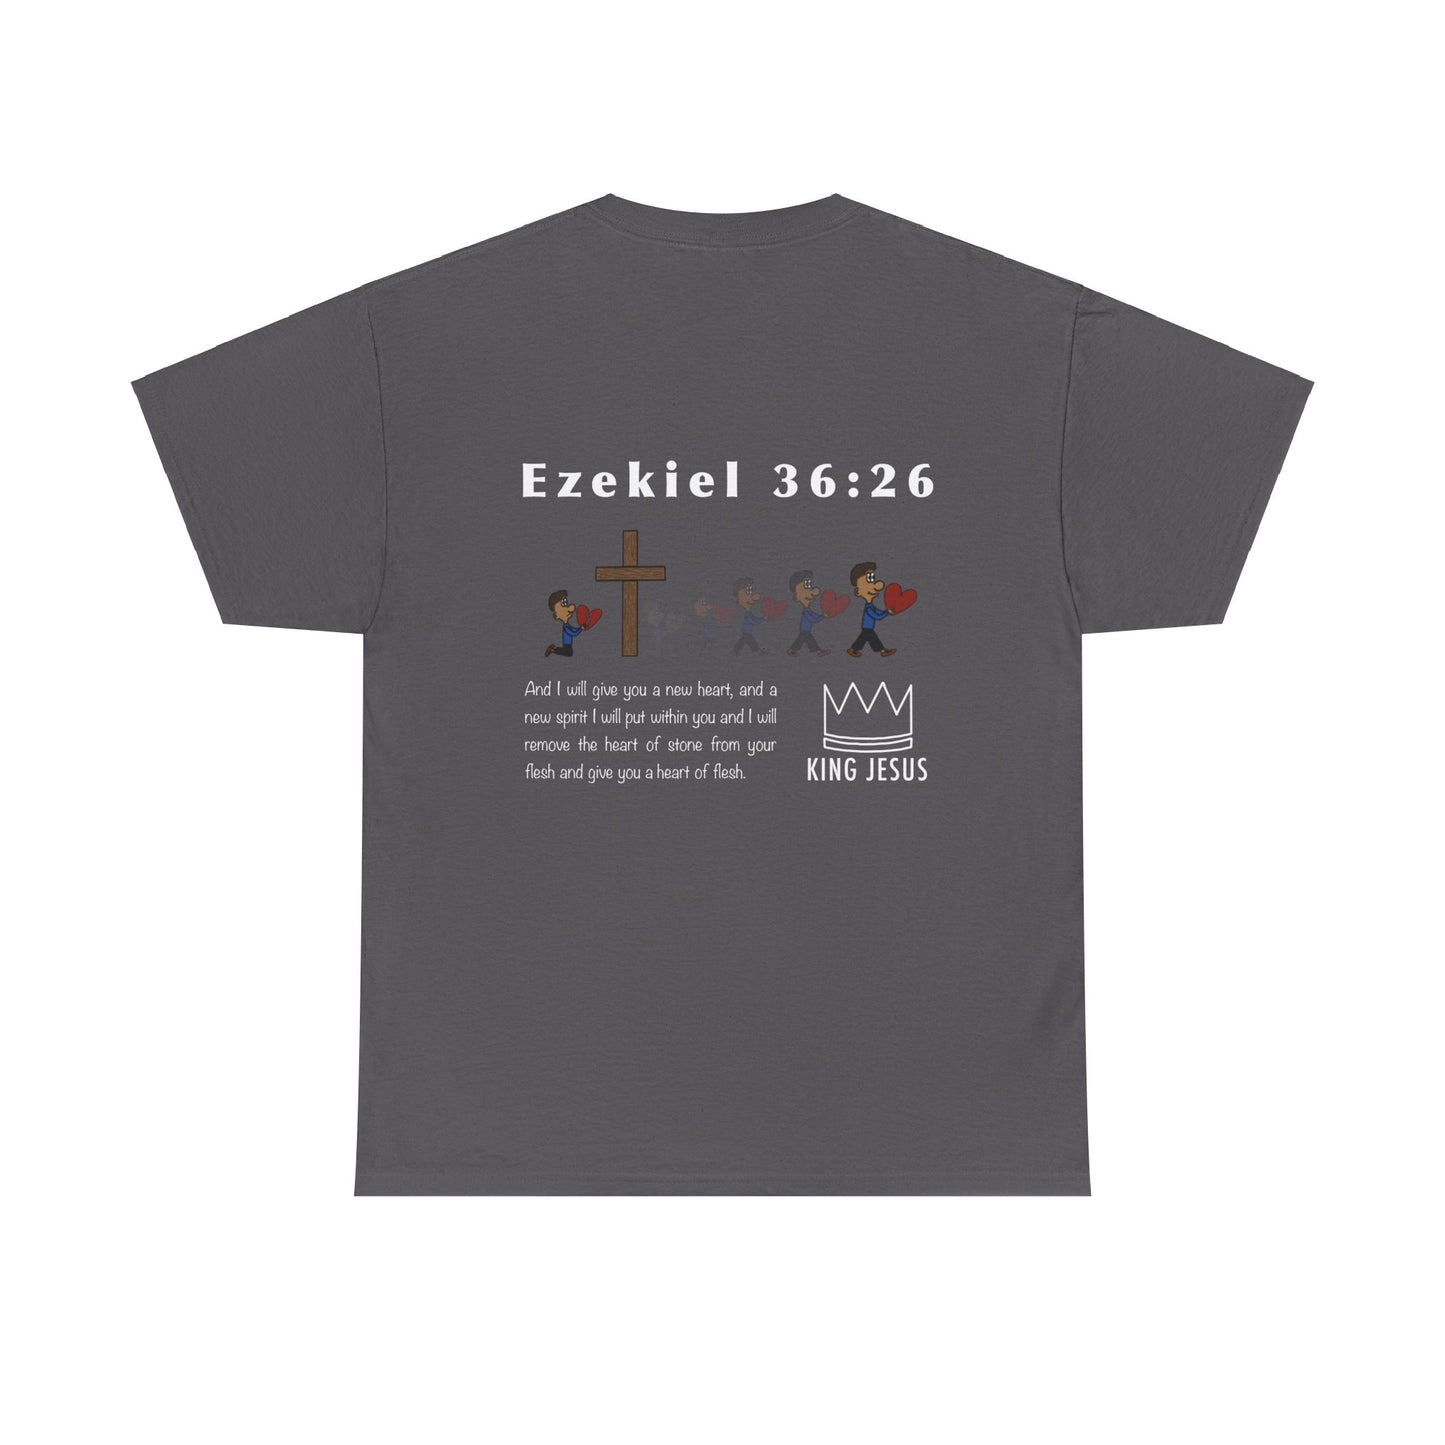 Ezekiel 36:26